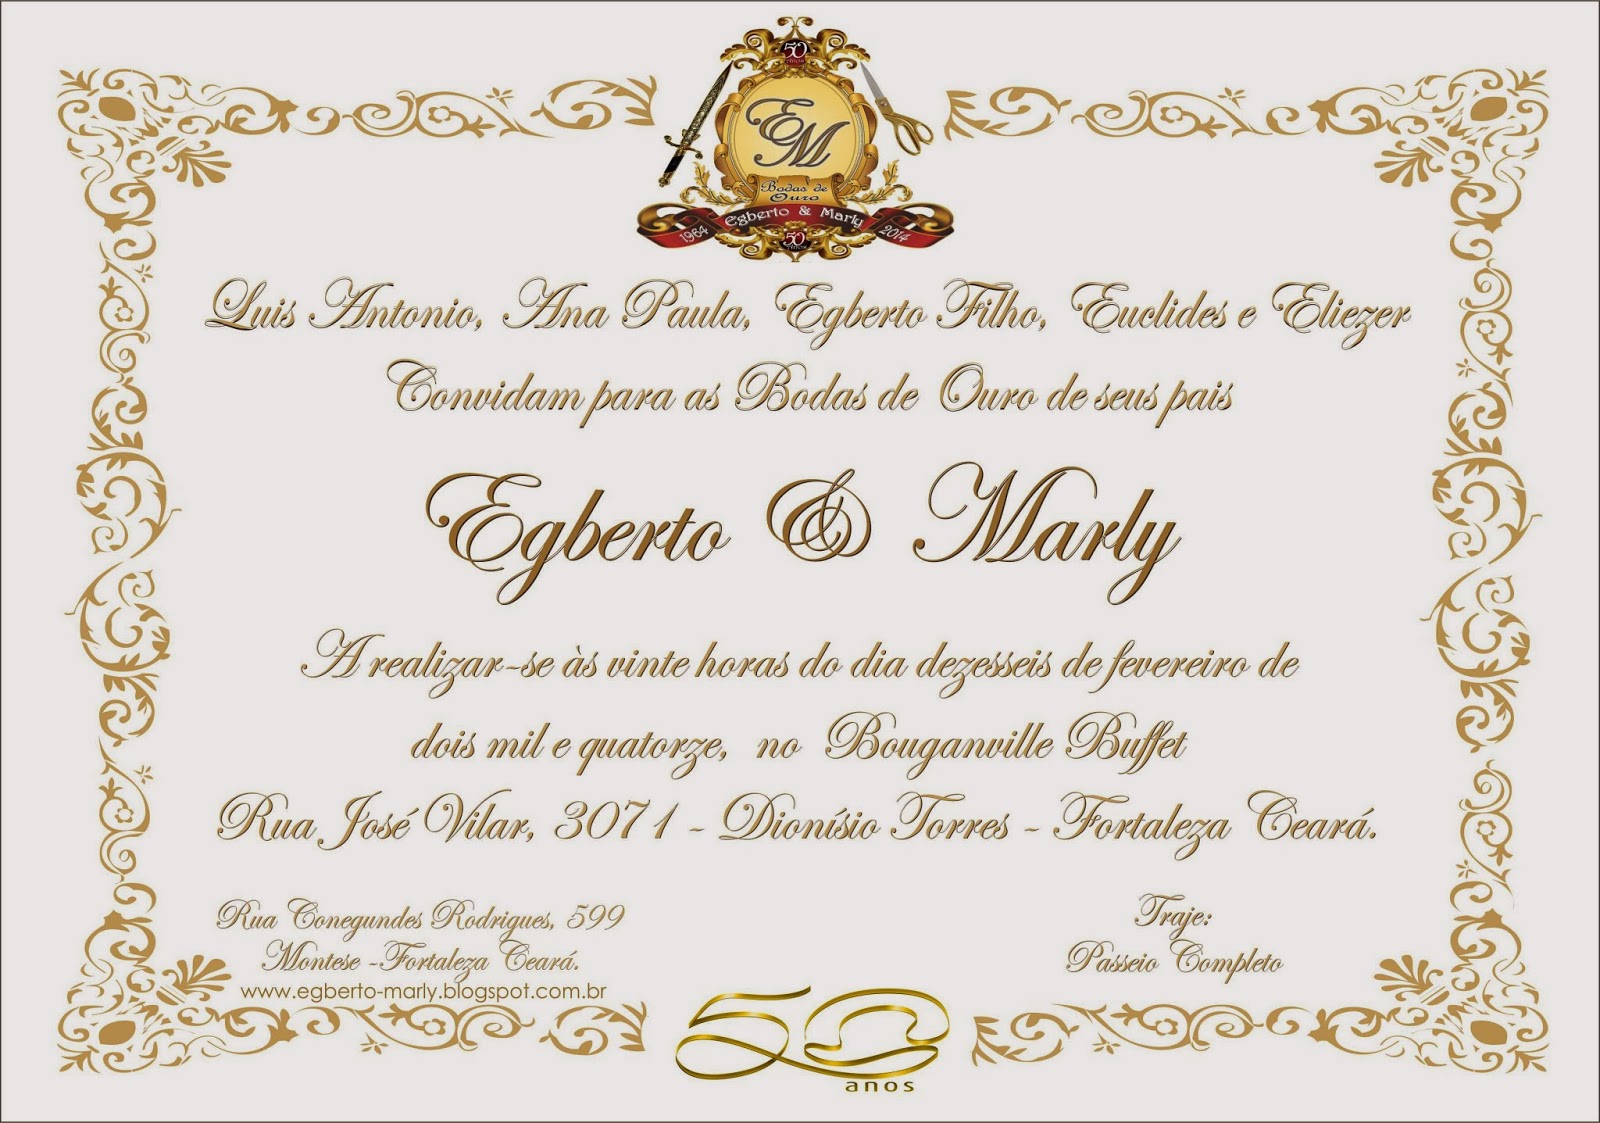 Bodas de Ouro - Egberto & Marly: Convite Bodas de Ouro